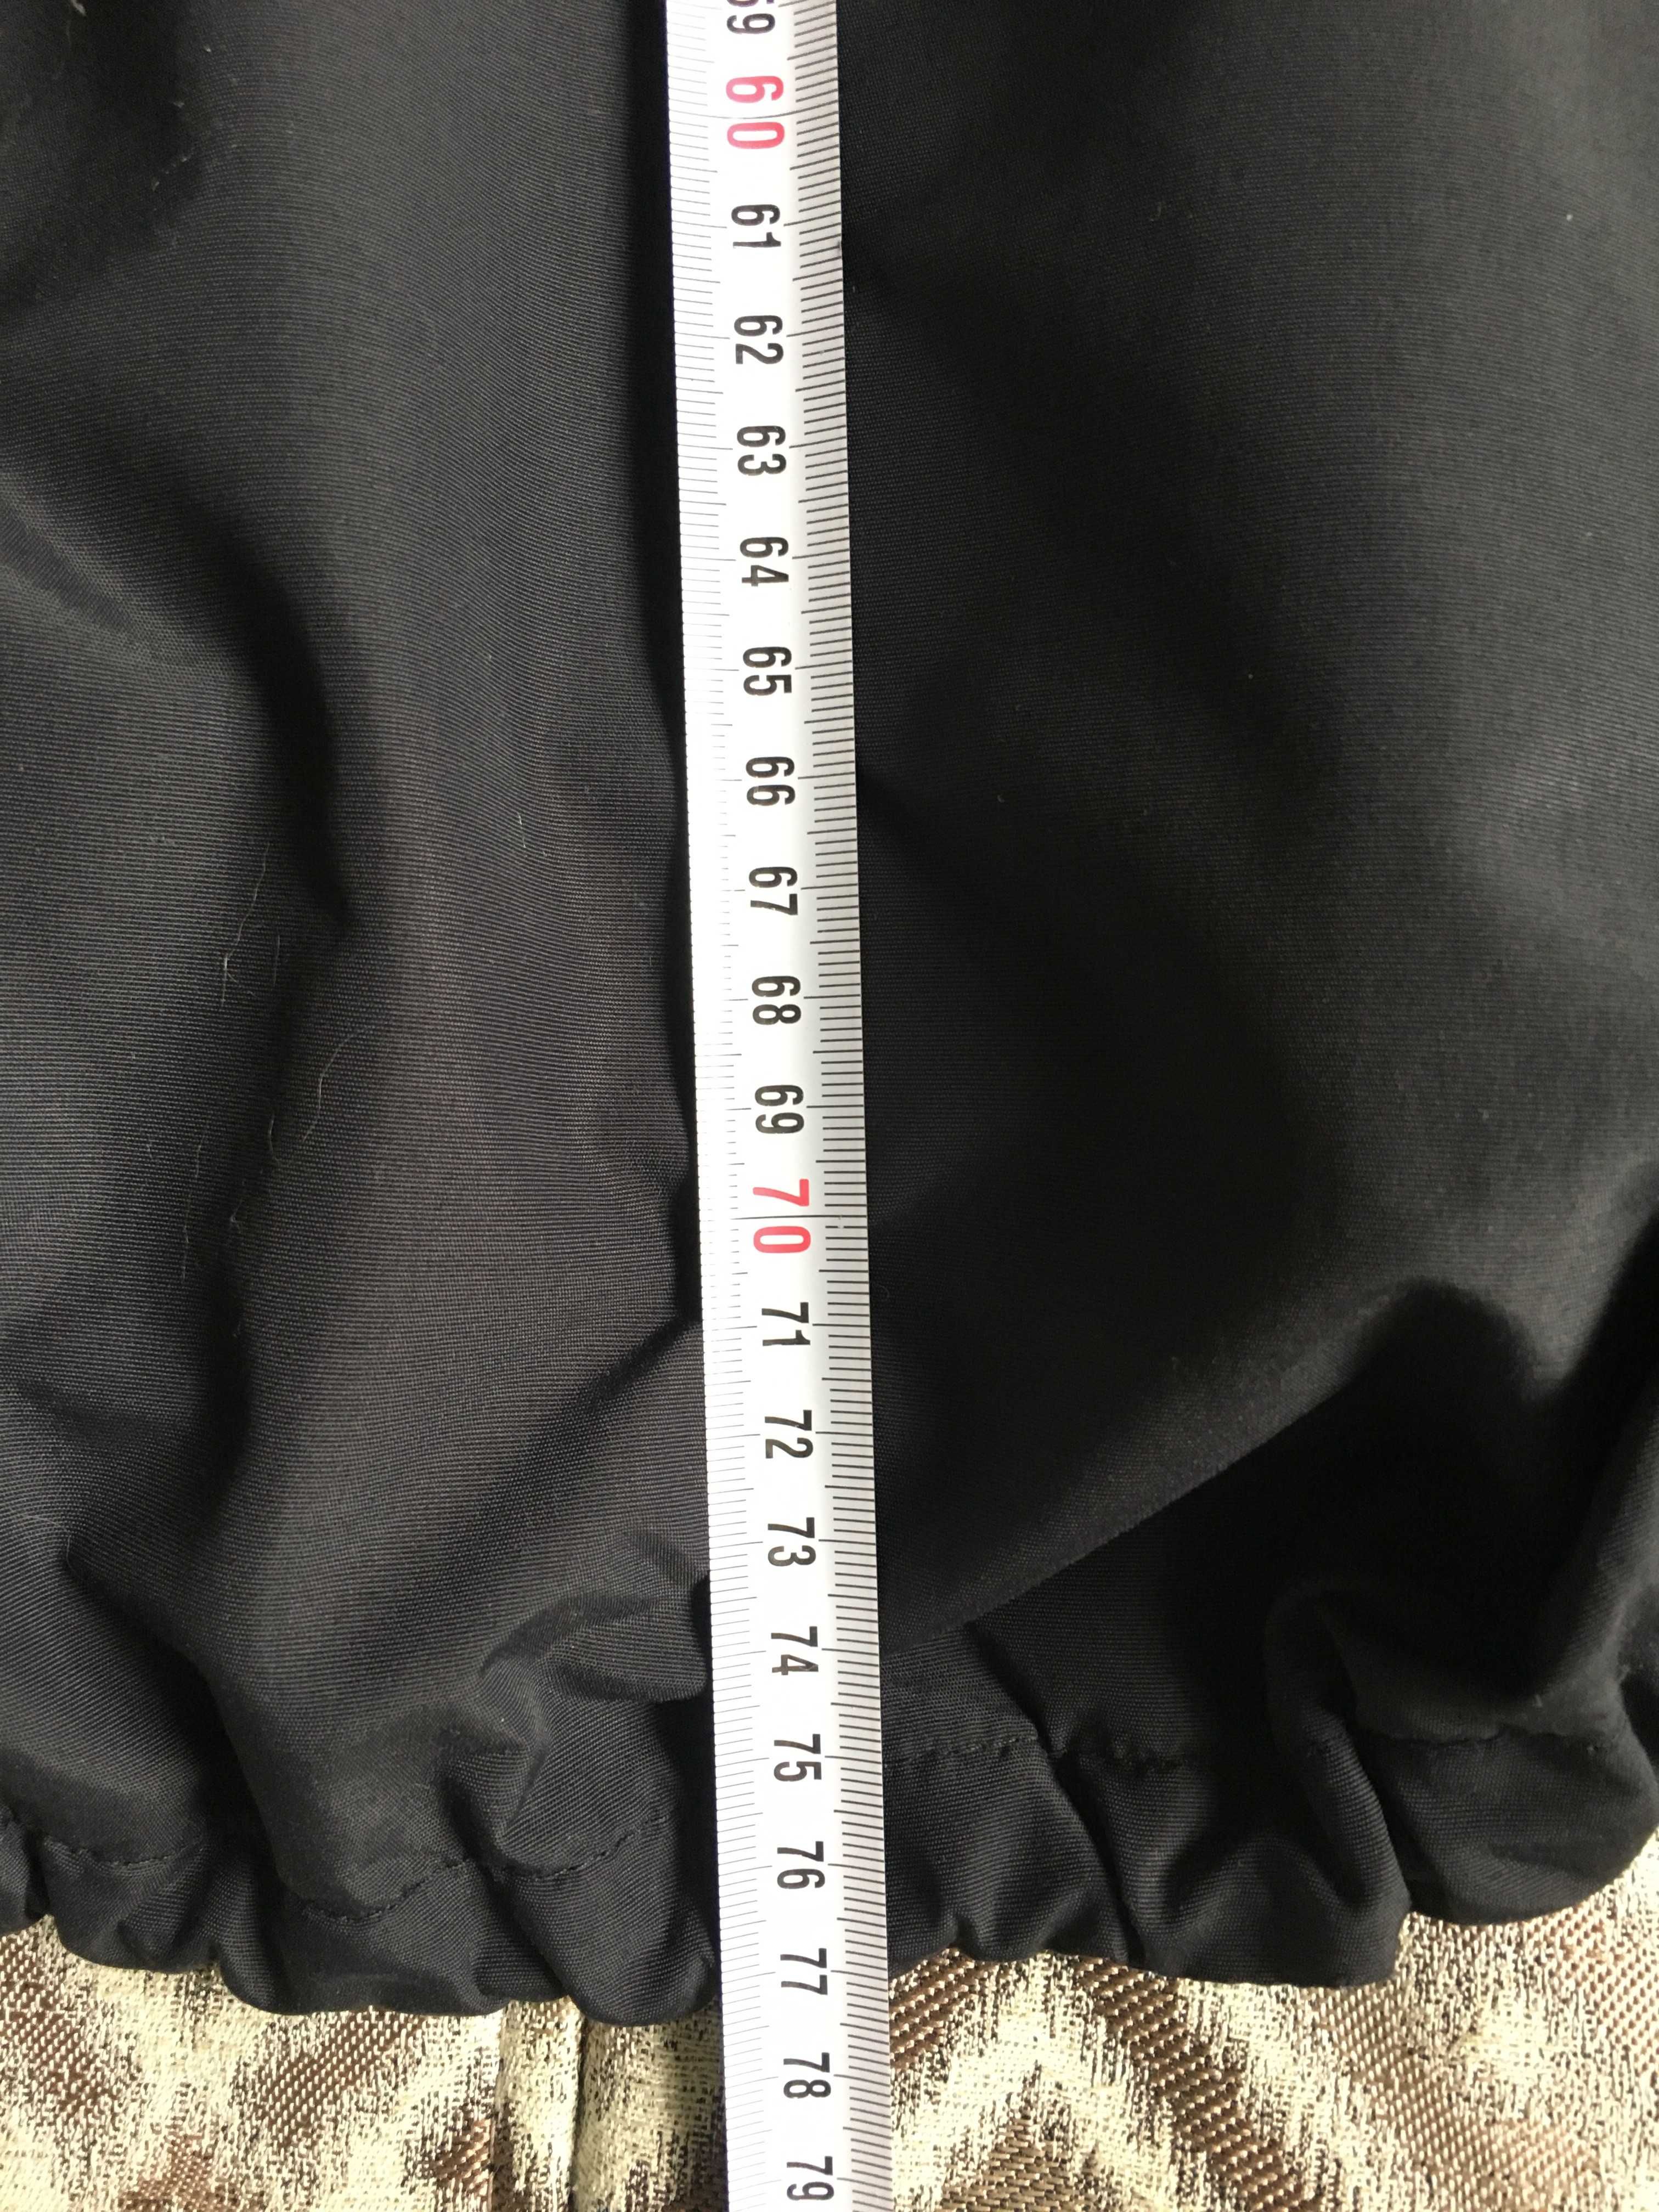 куртка Nike  спорт размер XXL